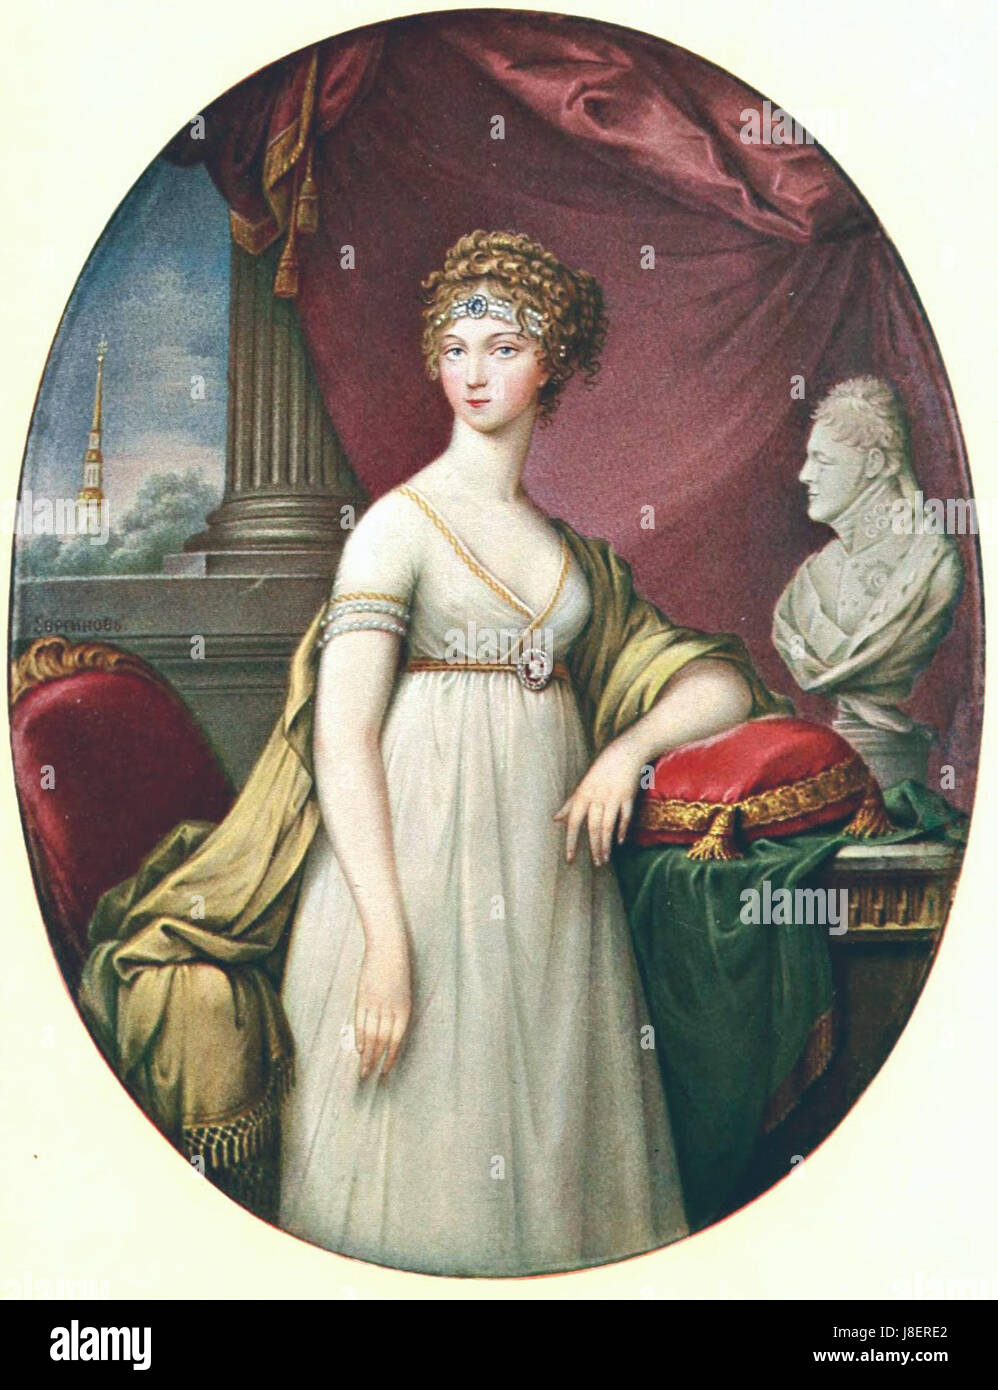 Elizabeth Alexeevna by Ervreinov (1800s, Hermitage) Stock Photo